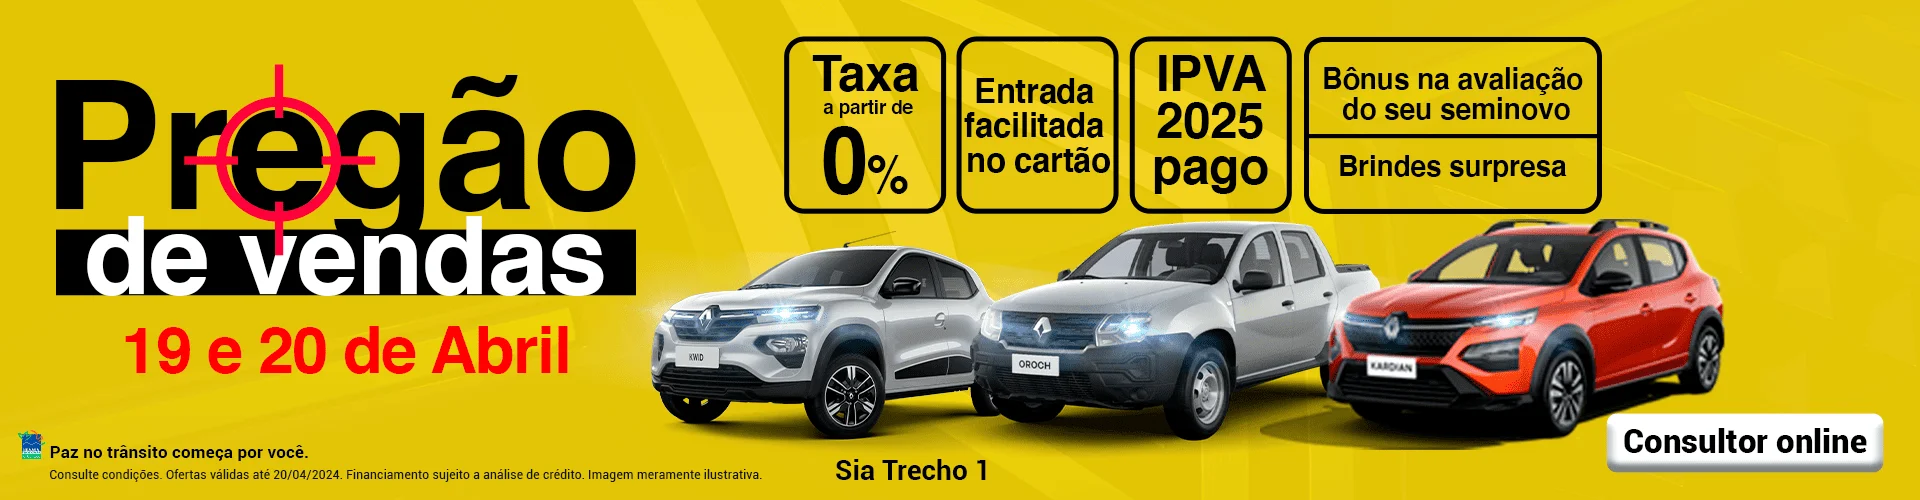 Pregão de vendas é na Tecar Renault